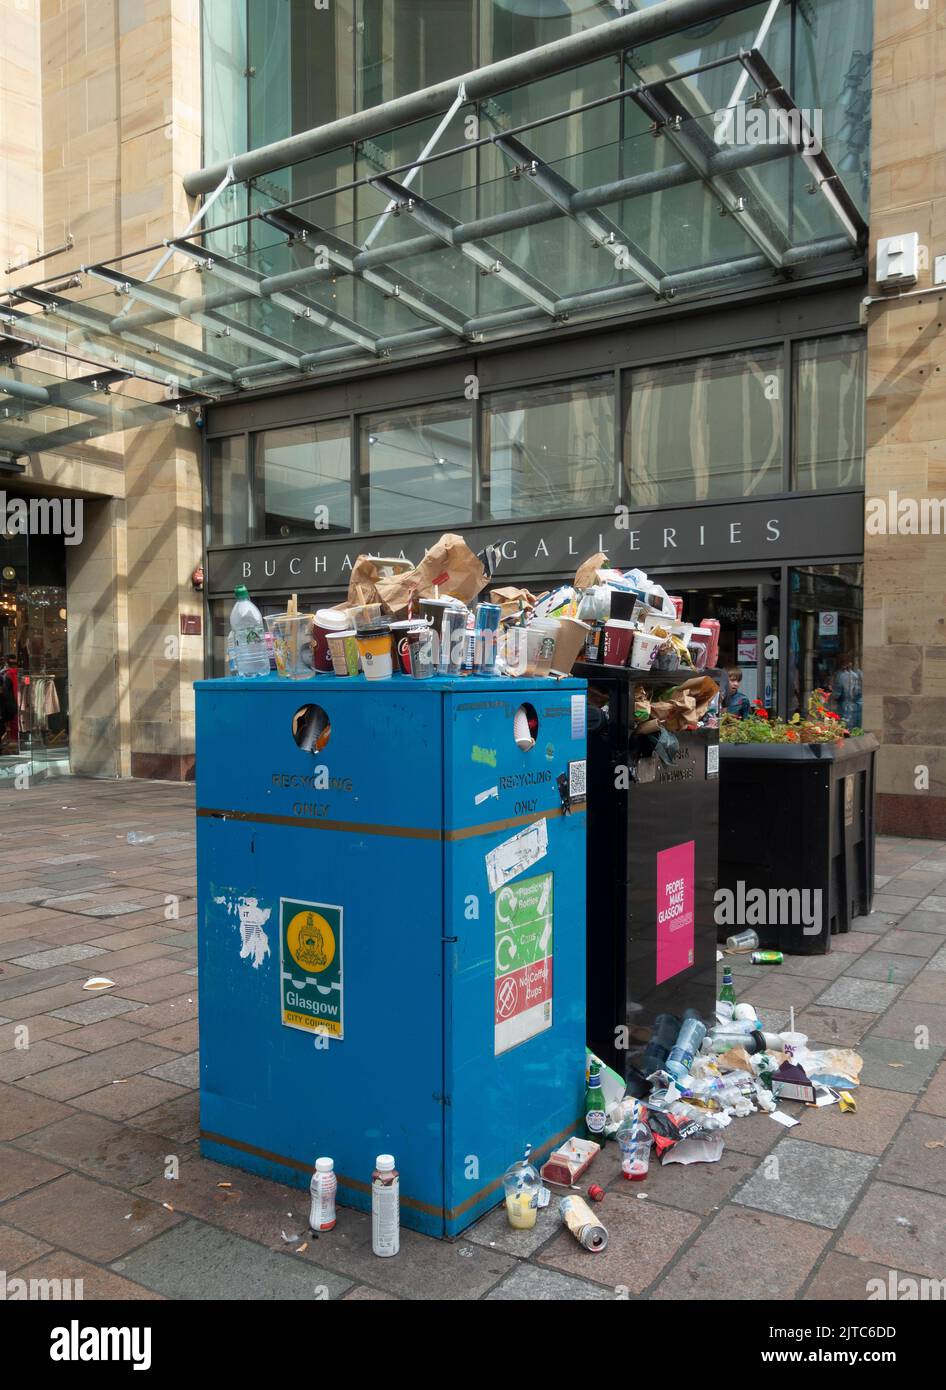 Contenedor de basura desbordante con muchas bolsas de plástico en el pavimento fuera de Buchanan Galleries, en el centro de Glasgow, durante una huelga de los recolectores de basura, Foto de stock